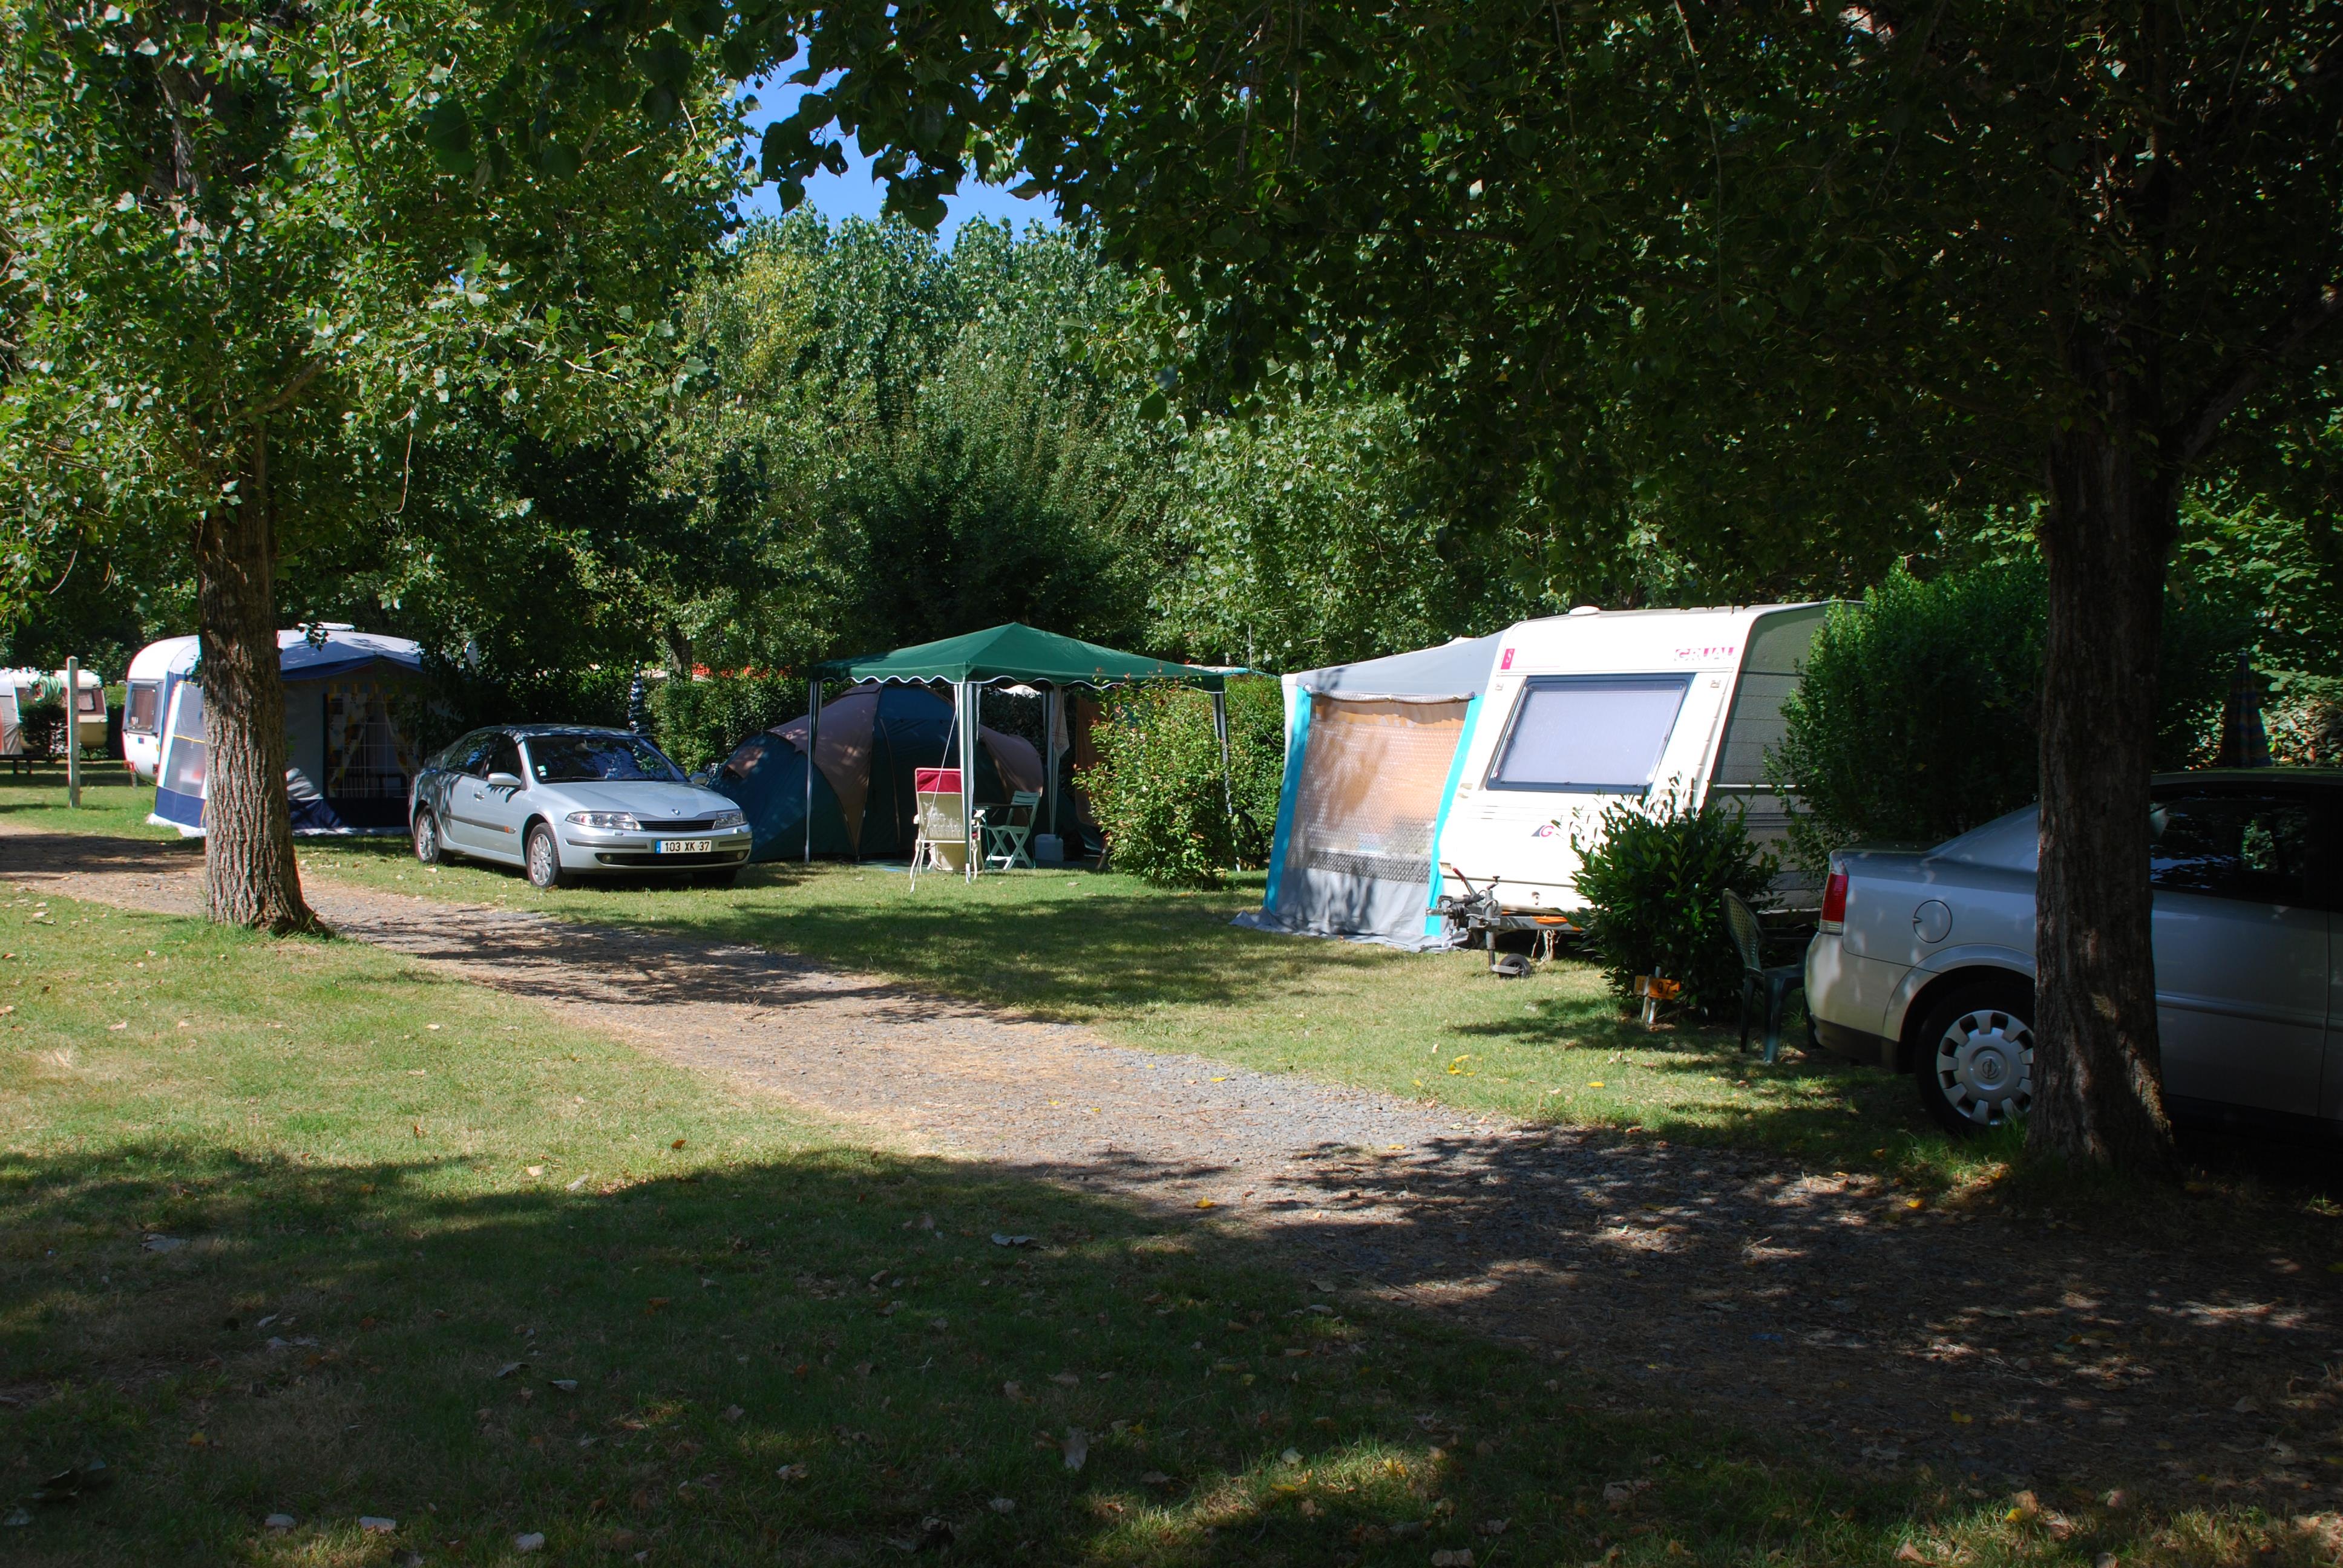 Emplacement pour tente, caravane ou camping-car